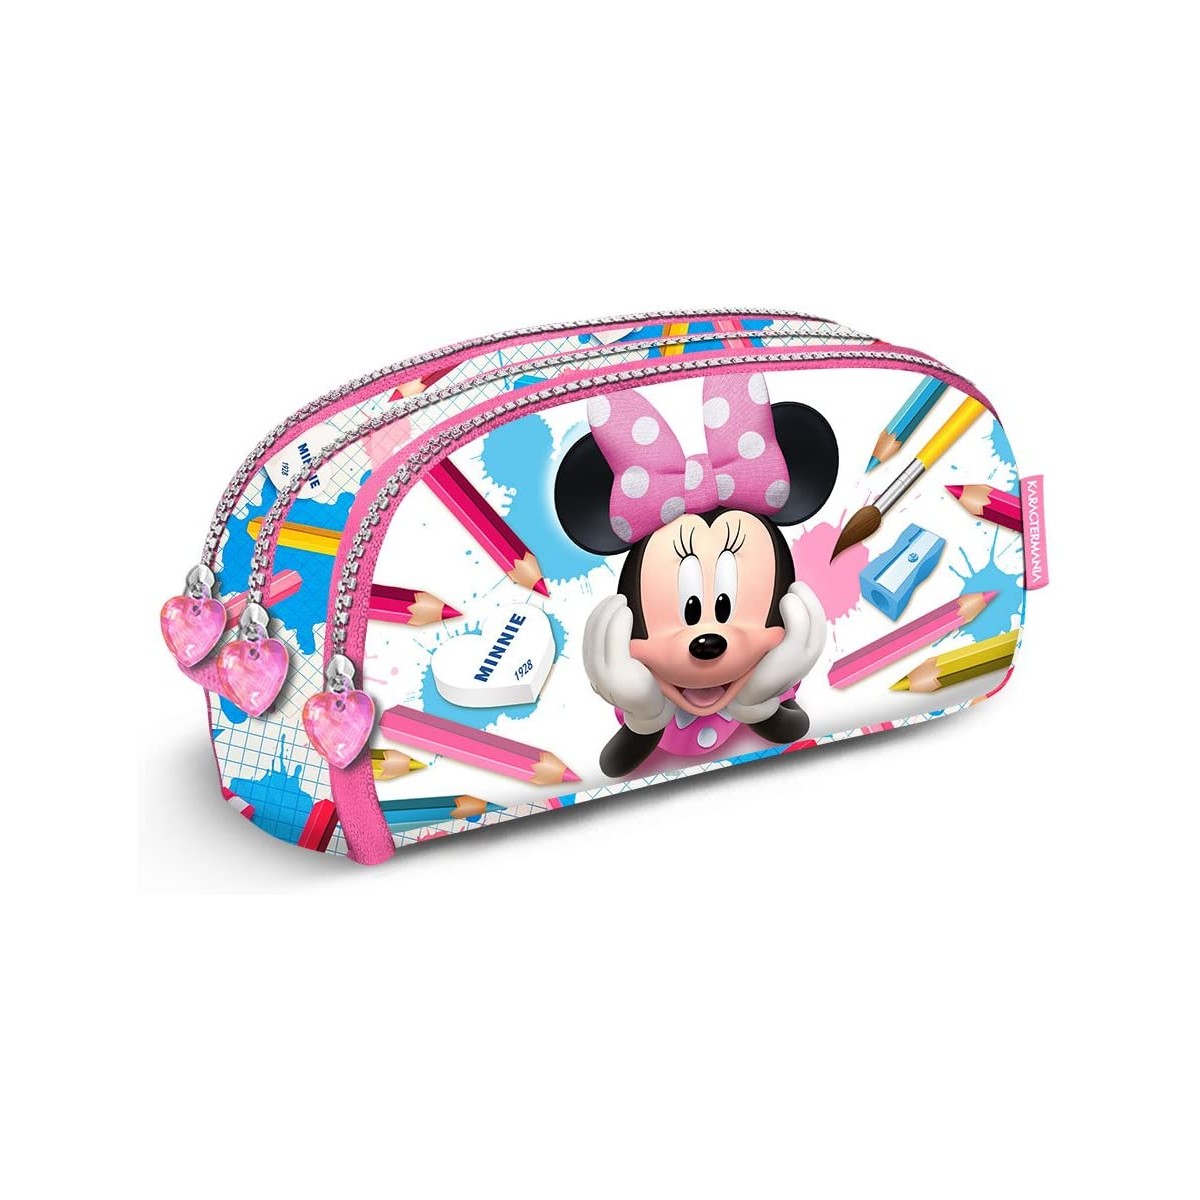 Astuccio borsello Minnie Disney con 3 scomparti